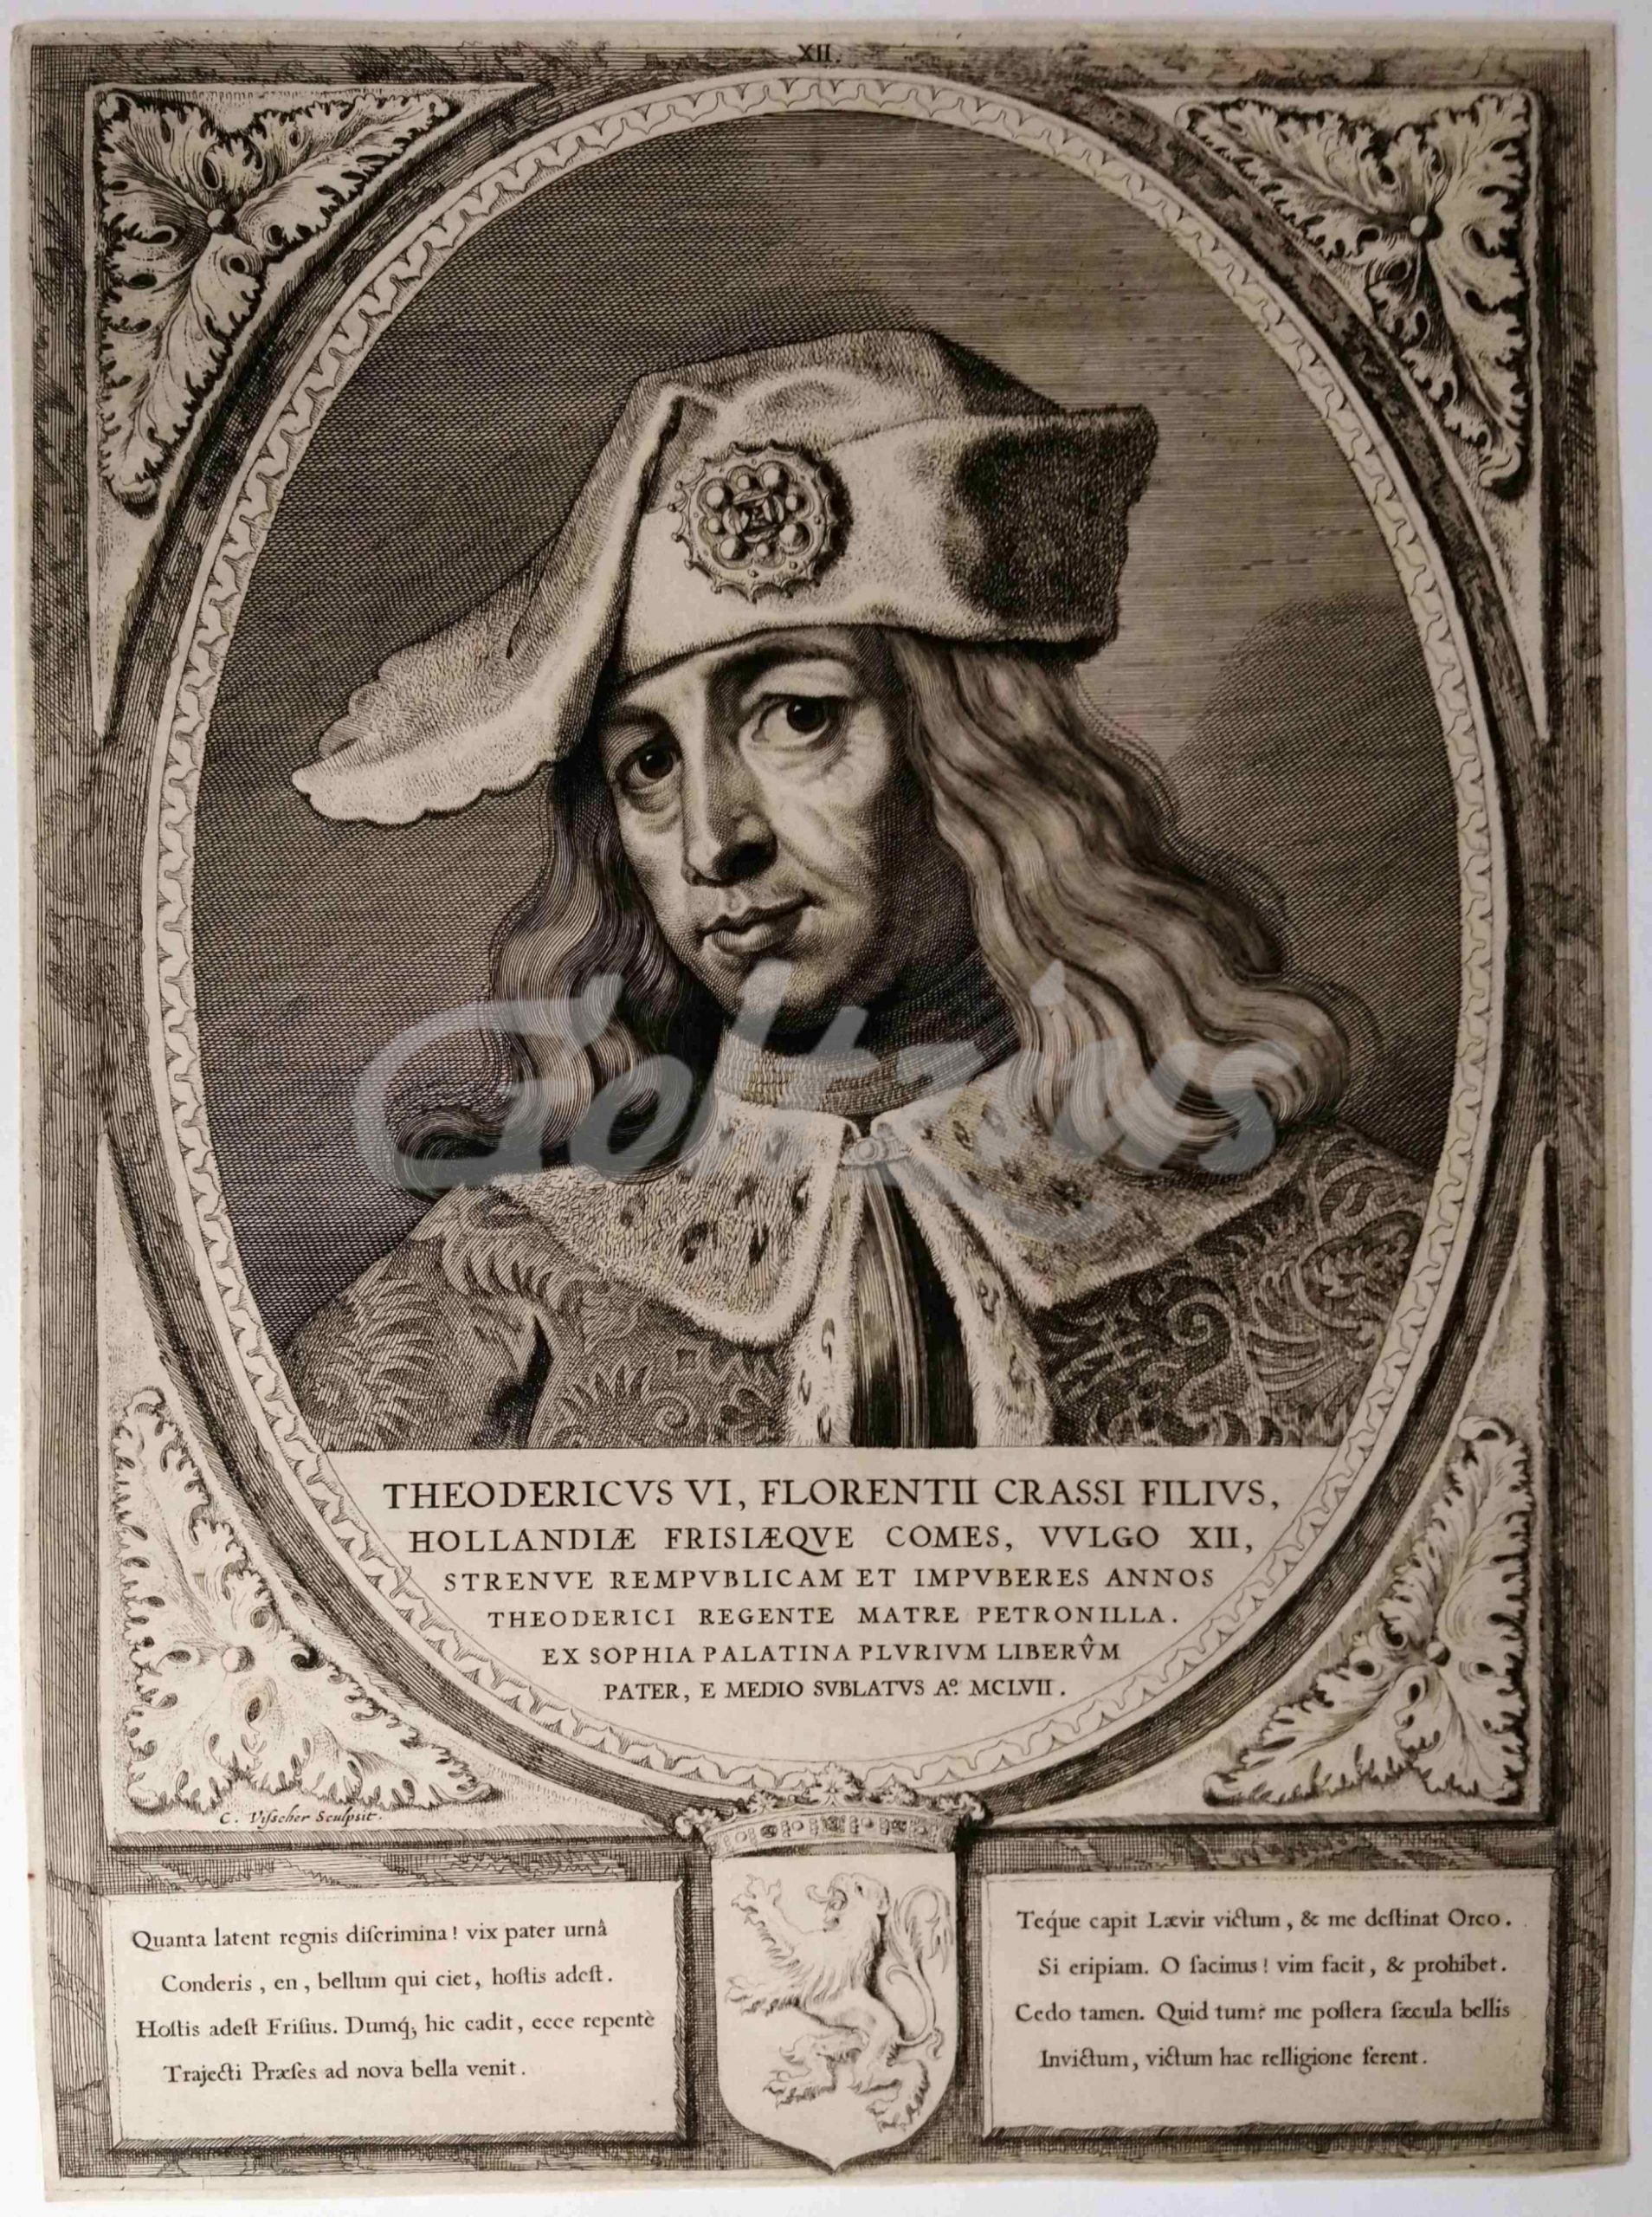 VISSCHER, CORNELIS, Portrait of Dirk VI